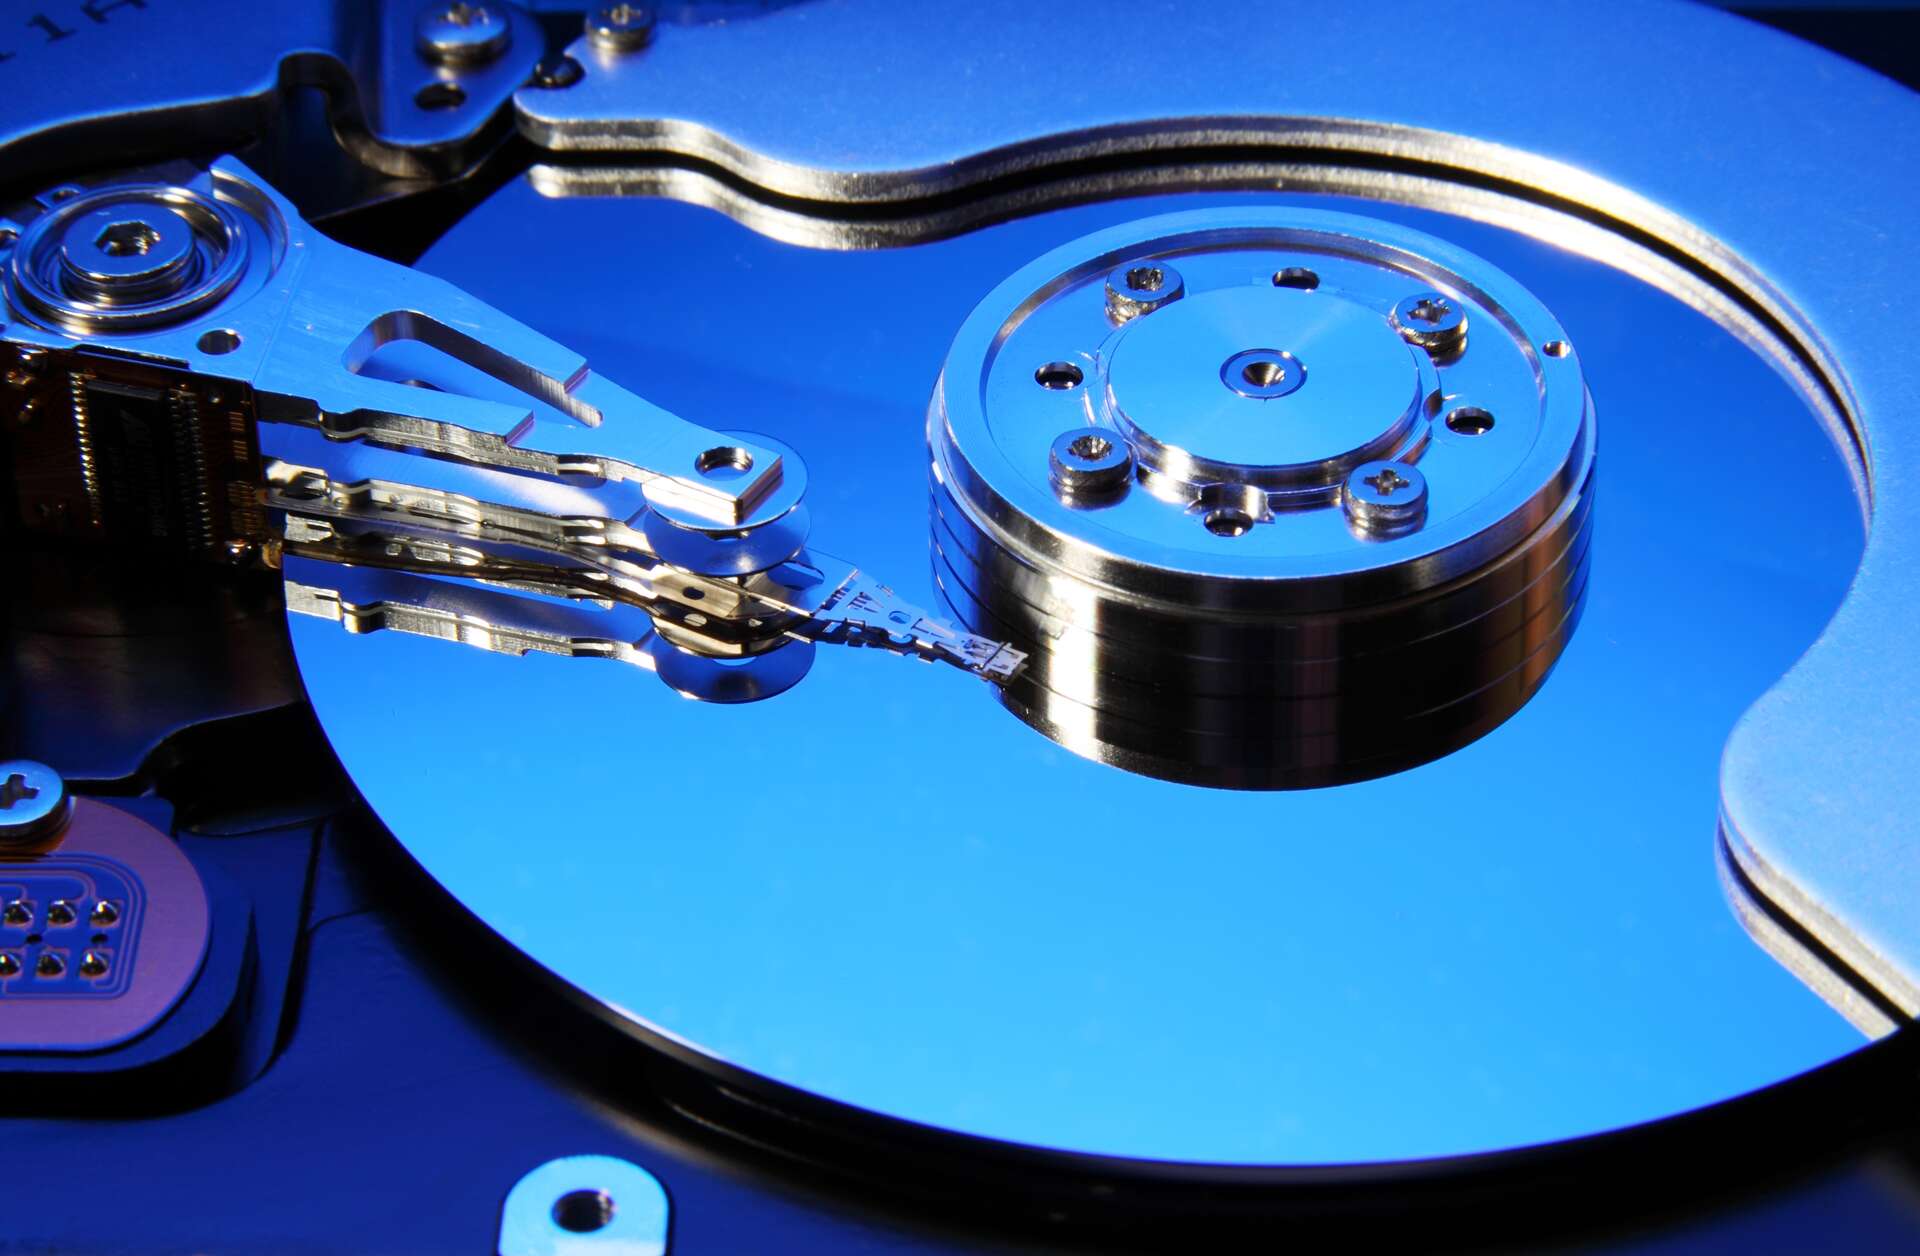 Comment récupérer les données d'un disque dur interne ?